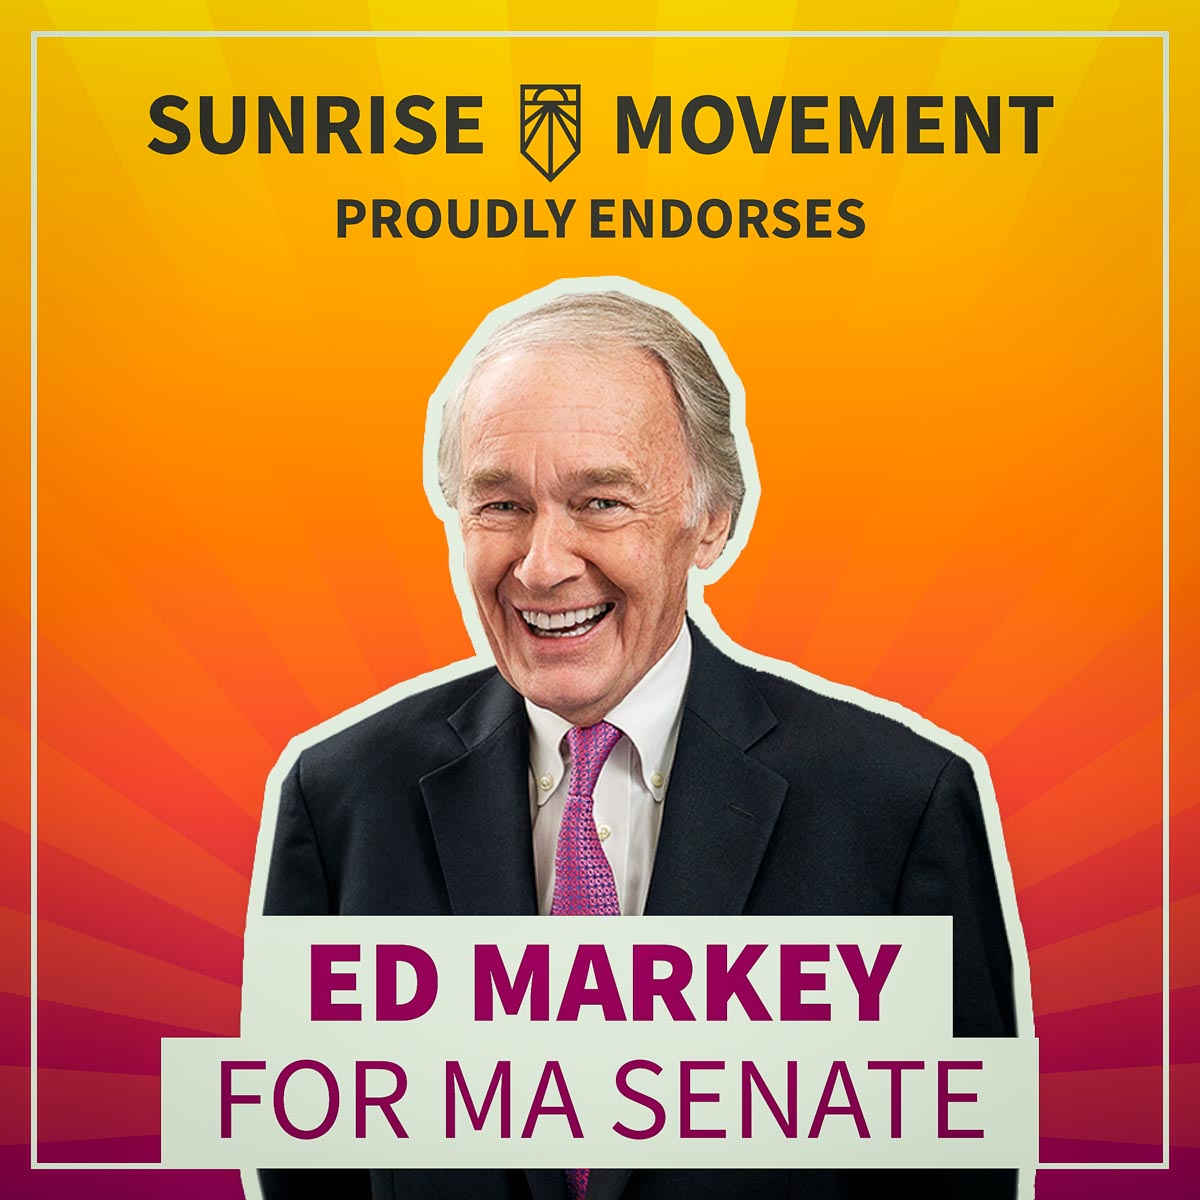 Фотография Эда Марки с текстом: «Движение восхода солнца с гордостью поддерживает Эда Марки в сенате штата Массачусетс».